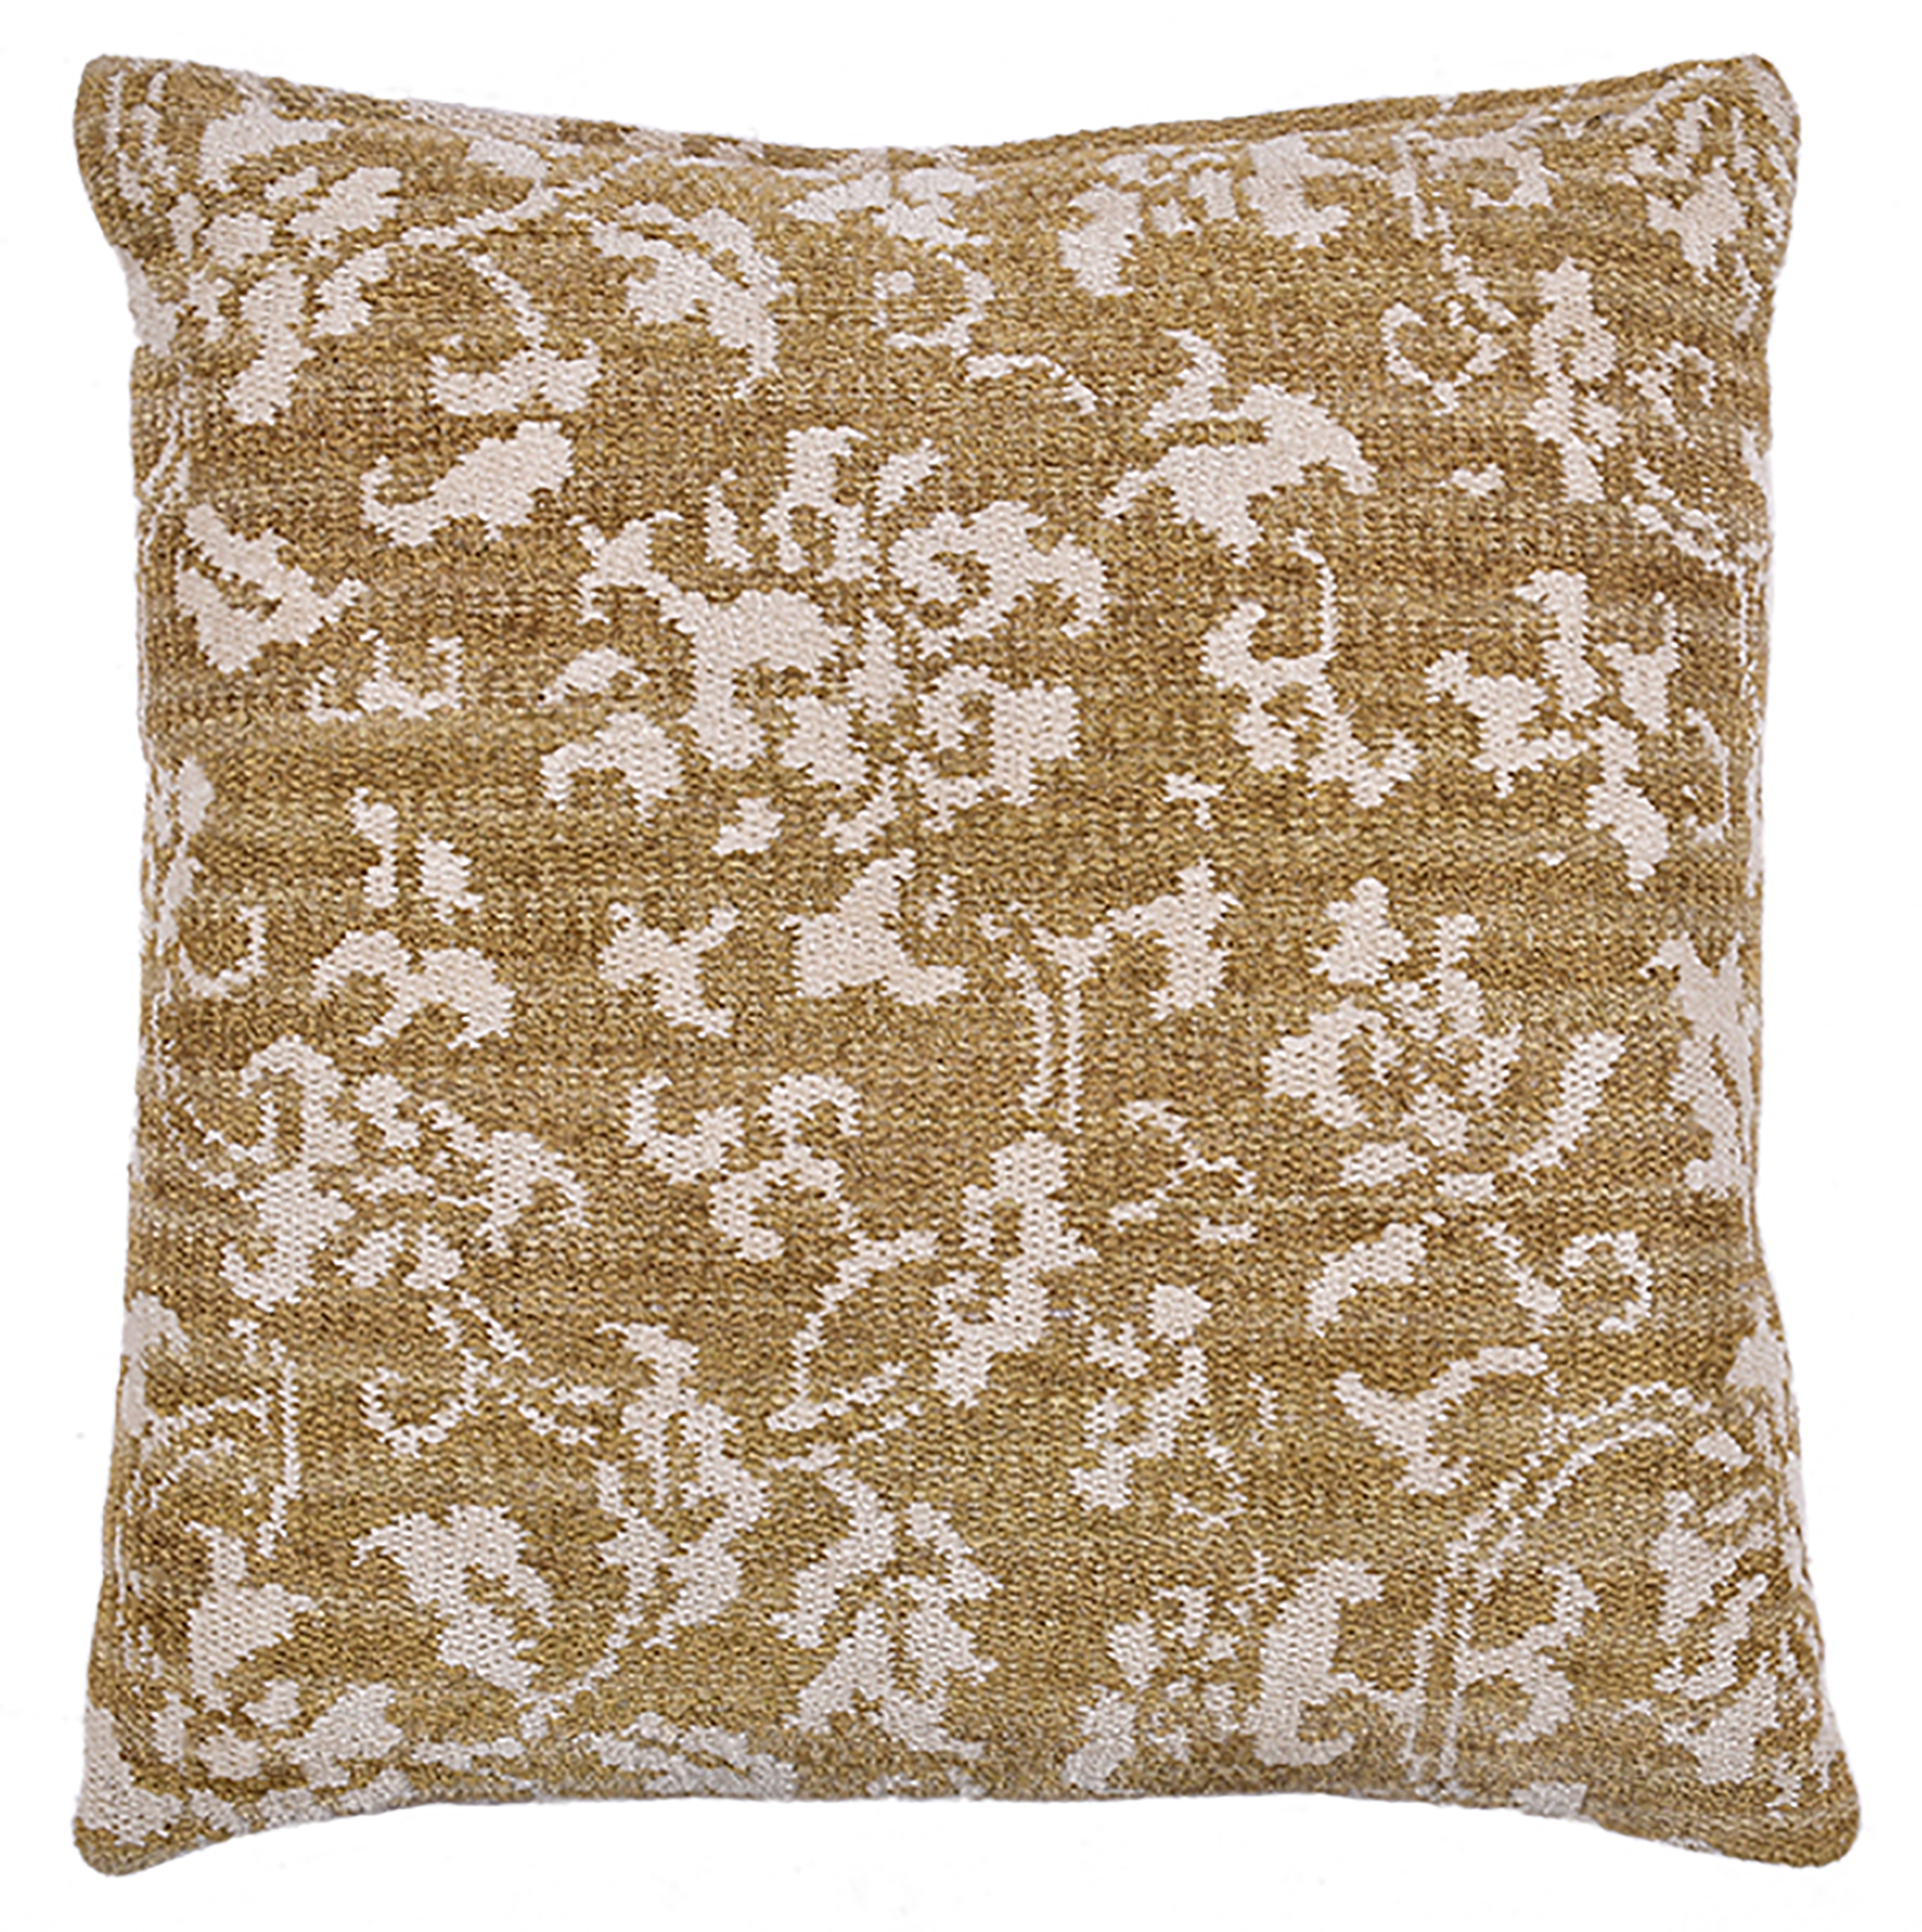 Luxury jacquard decorative Cushion1